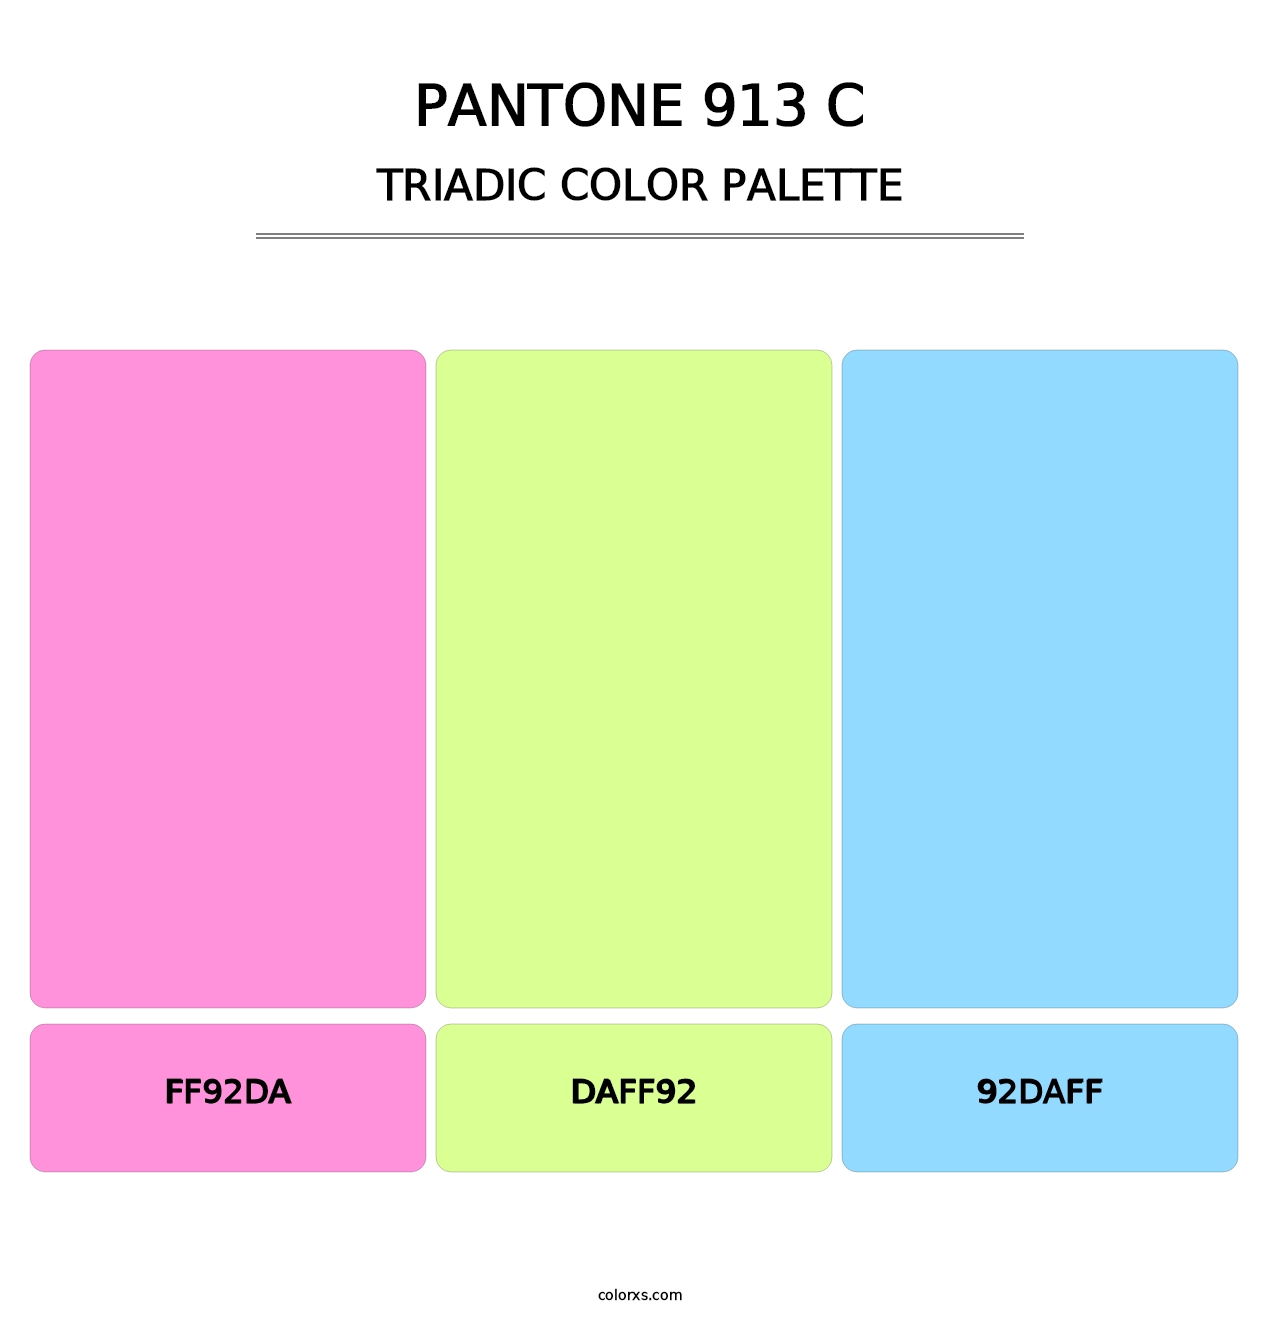 PANTONE 913 C - Triadic Color Palette